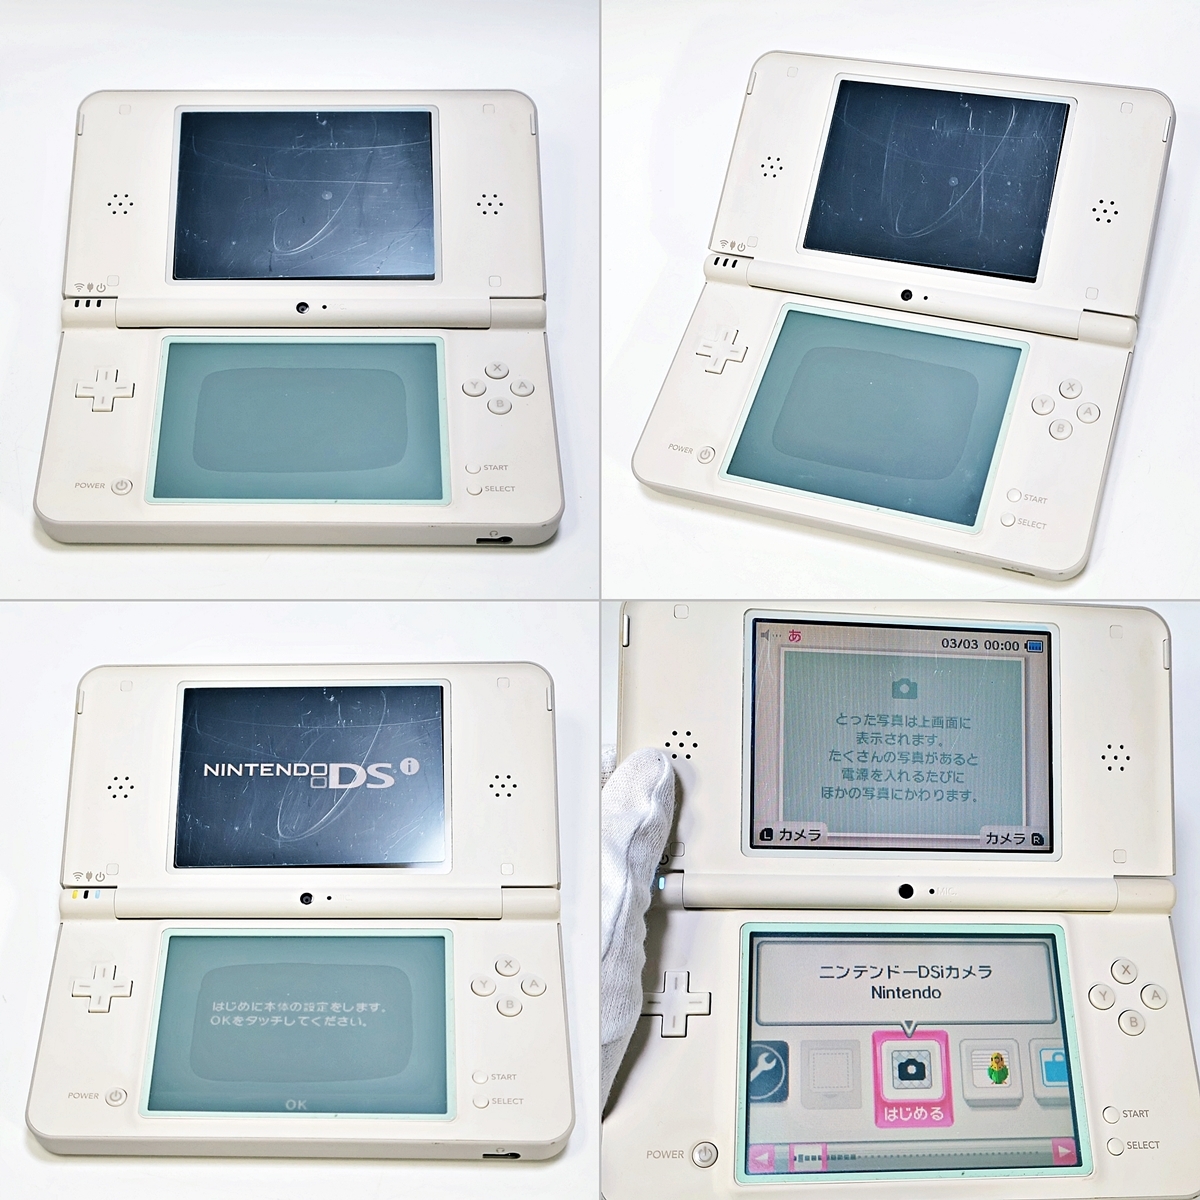 Nintendo DS i LL UTL-001 任天堂 ニンテンドー ナチュラルホワイト ゲーム機 本体 取扱説明書 箱付き 003FEZFI03_画像5